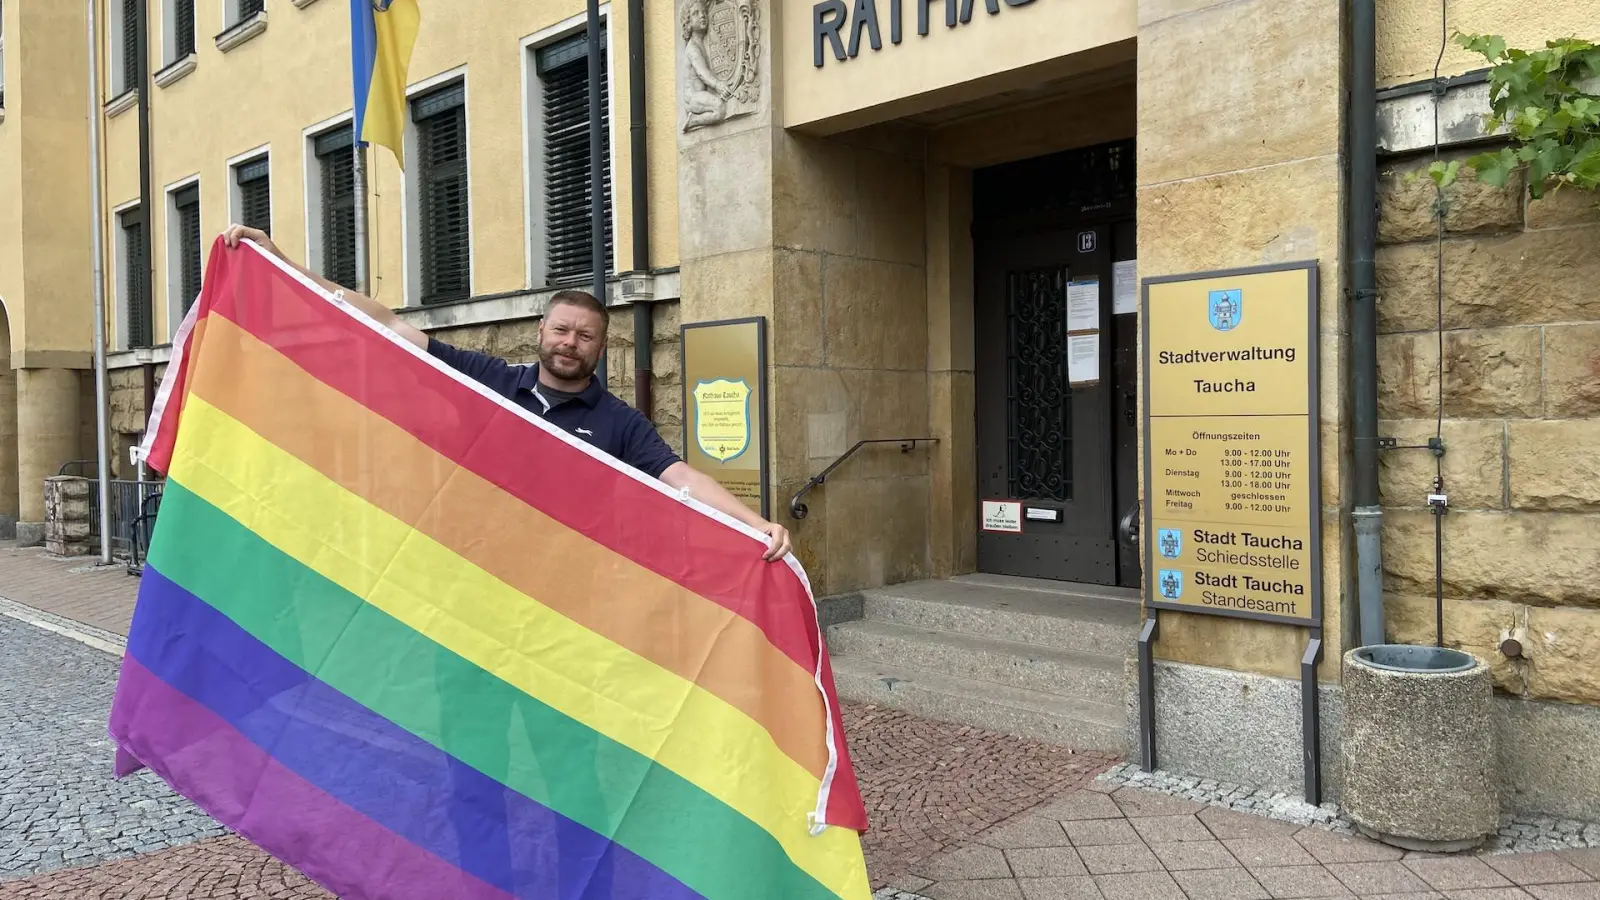 Nico Graumann, Verantwortlicher für Öffentlichkeitsarbeit der Stadt Taucha, präsentiert die Regenbogenflagge, die ab Montag am Rathaus wehen wird. (Foto: taucha-kompakt.de)